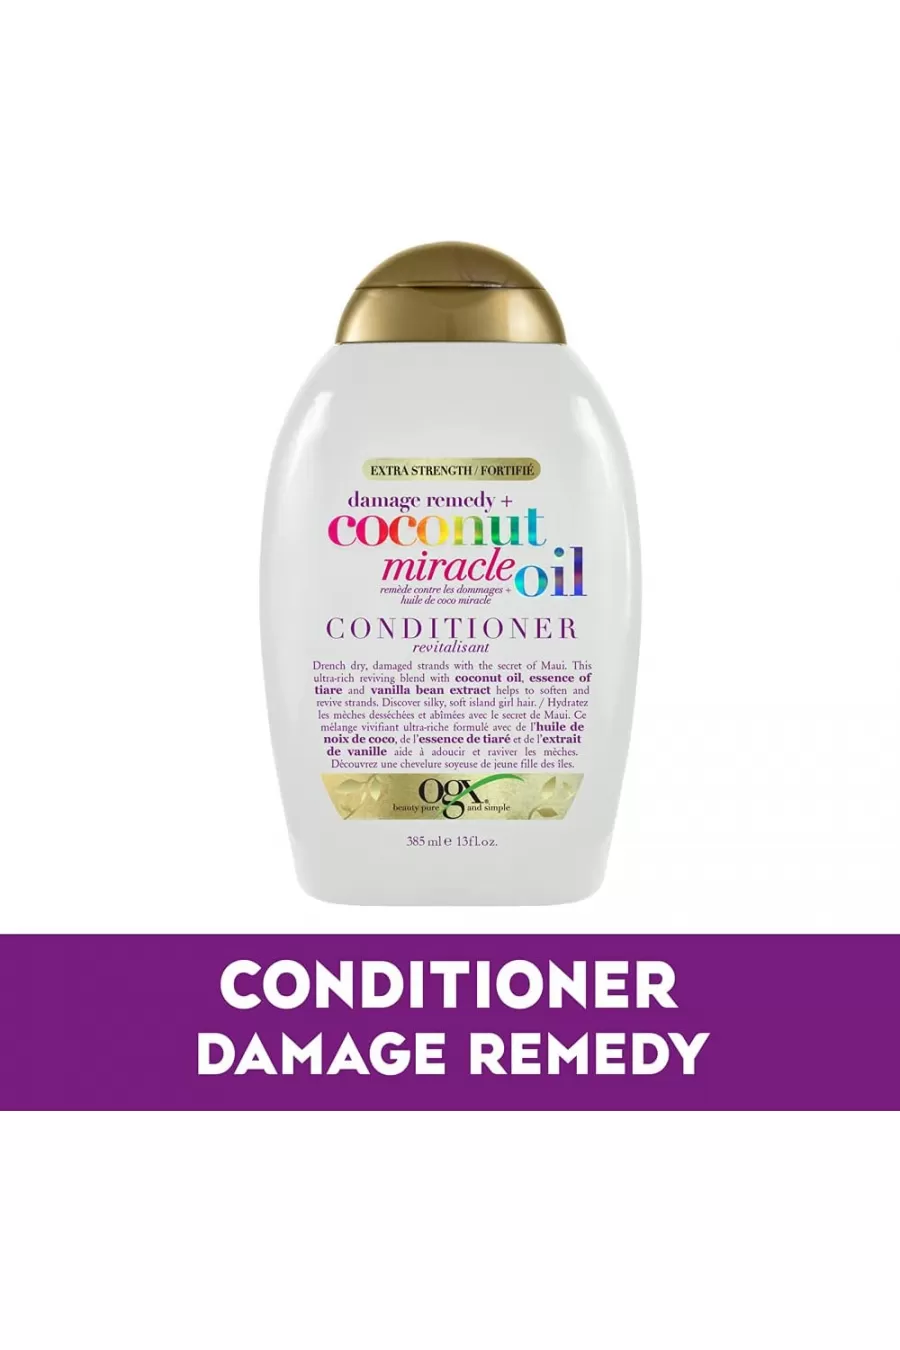 بدون سولفات Coconut Miracle oil Conditioner او جی ایکس Ogx نرم کننده عصاره نارگیل